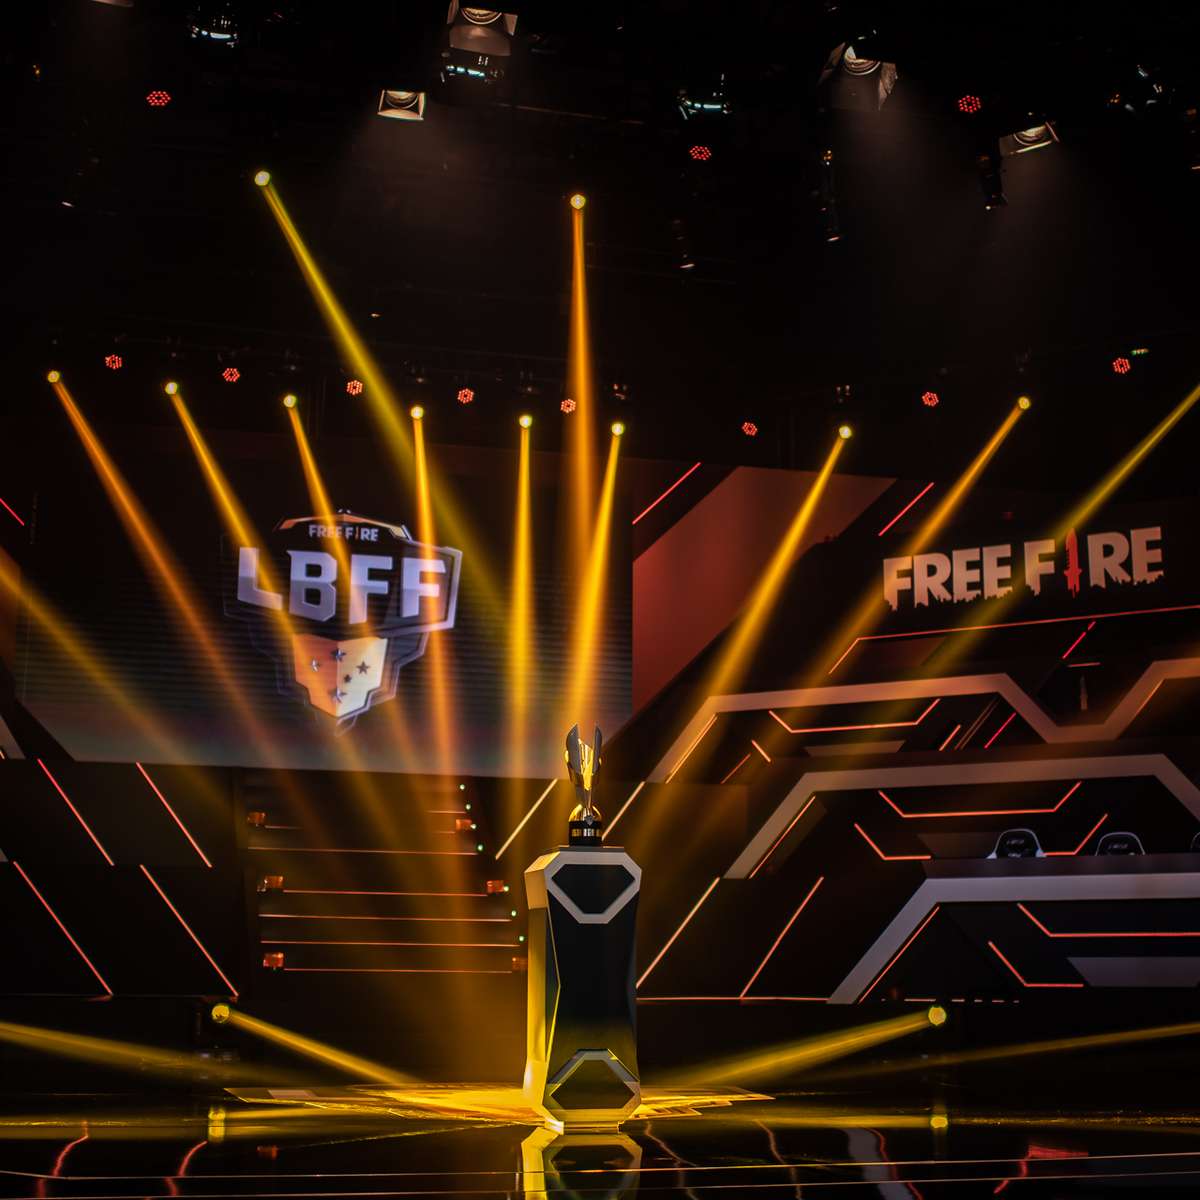 Celular temático do Free Fire chega ao Brasil por menos de R$ 2 mil